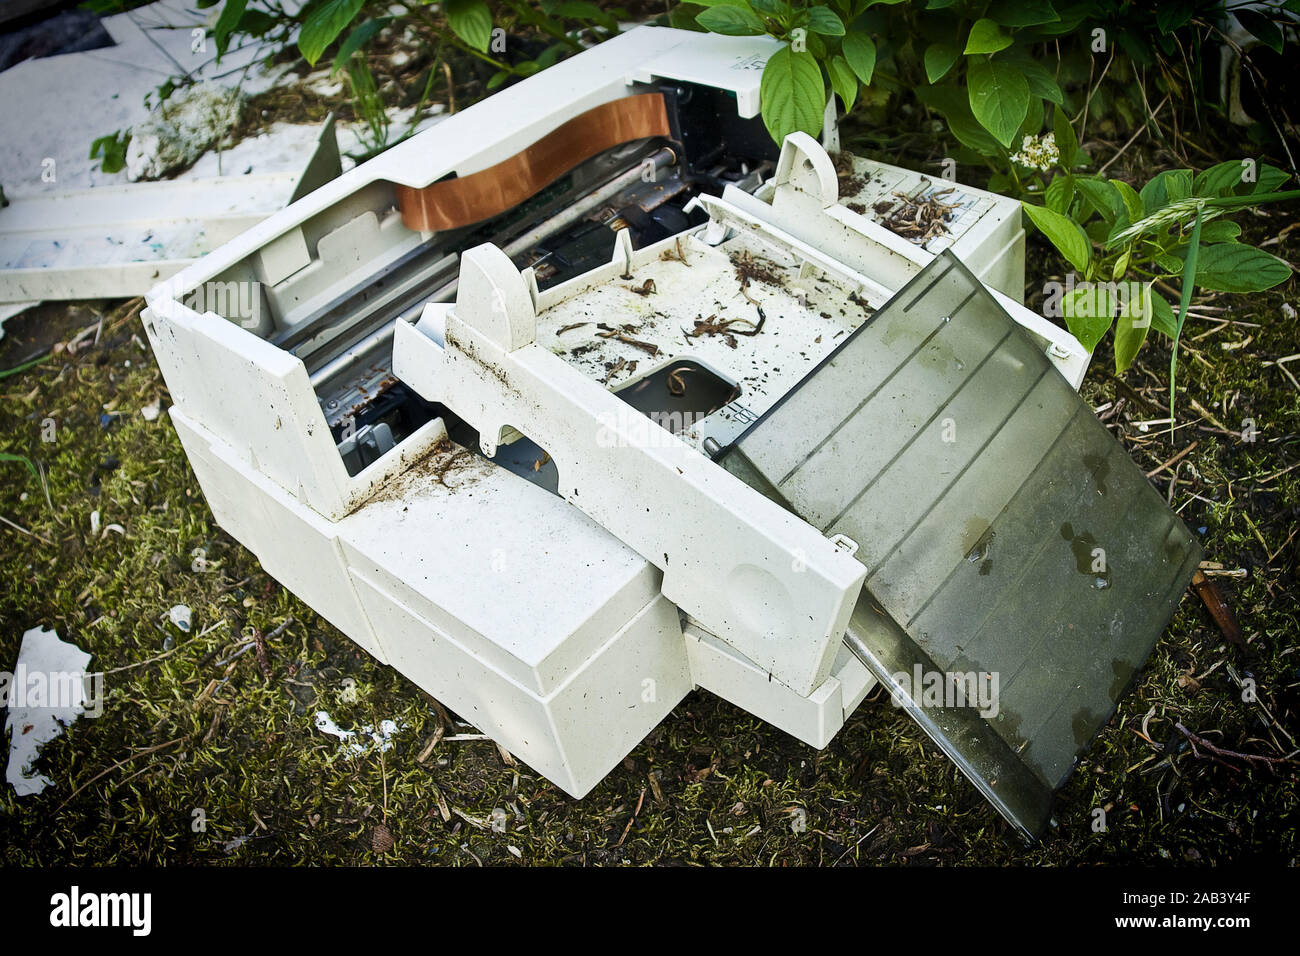 Alter Tintenstrahldrucker auf einer wilden Müllhalde |Old inkjet printer on a wild dump| Stock Photo